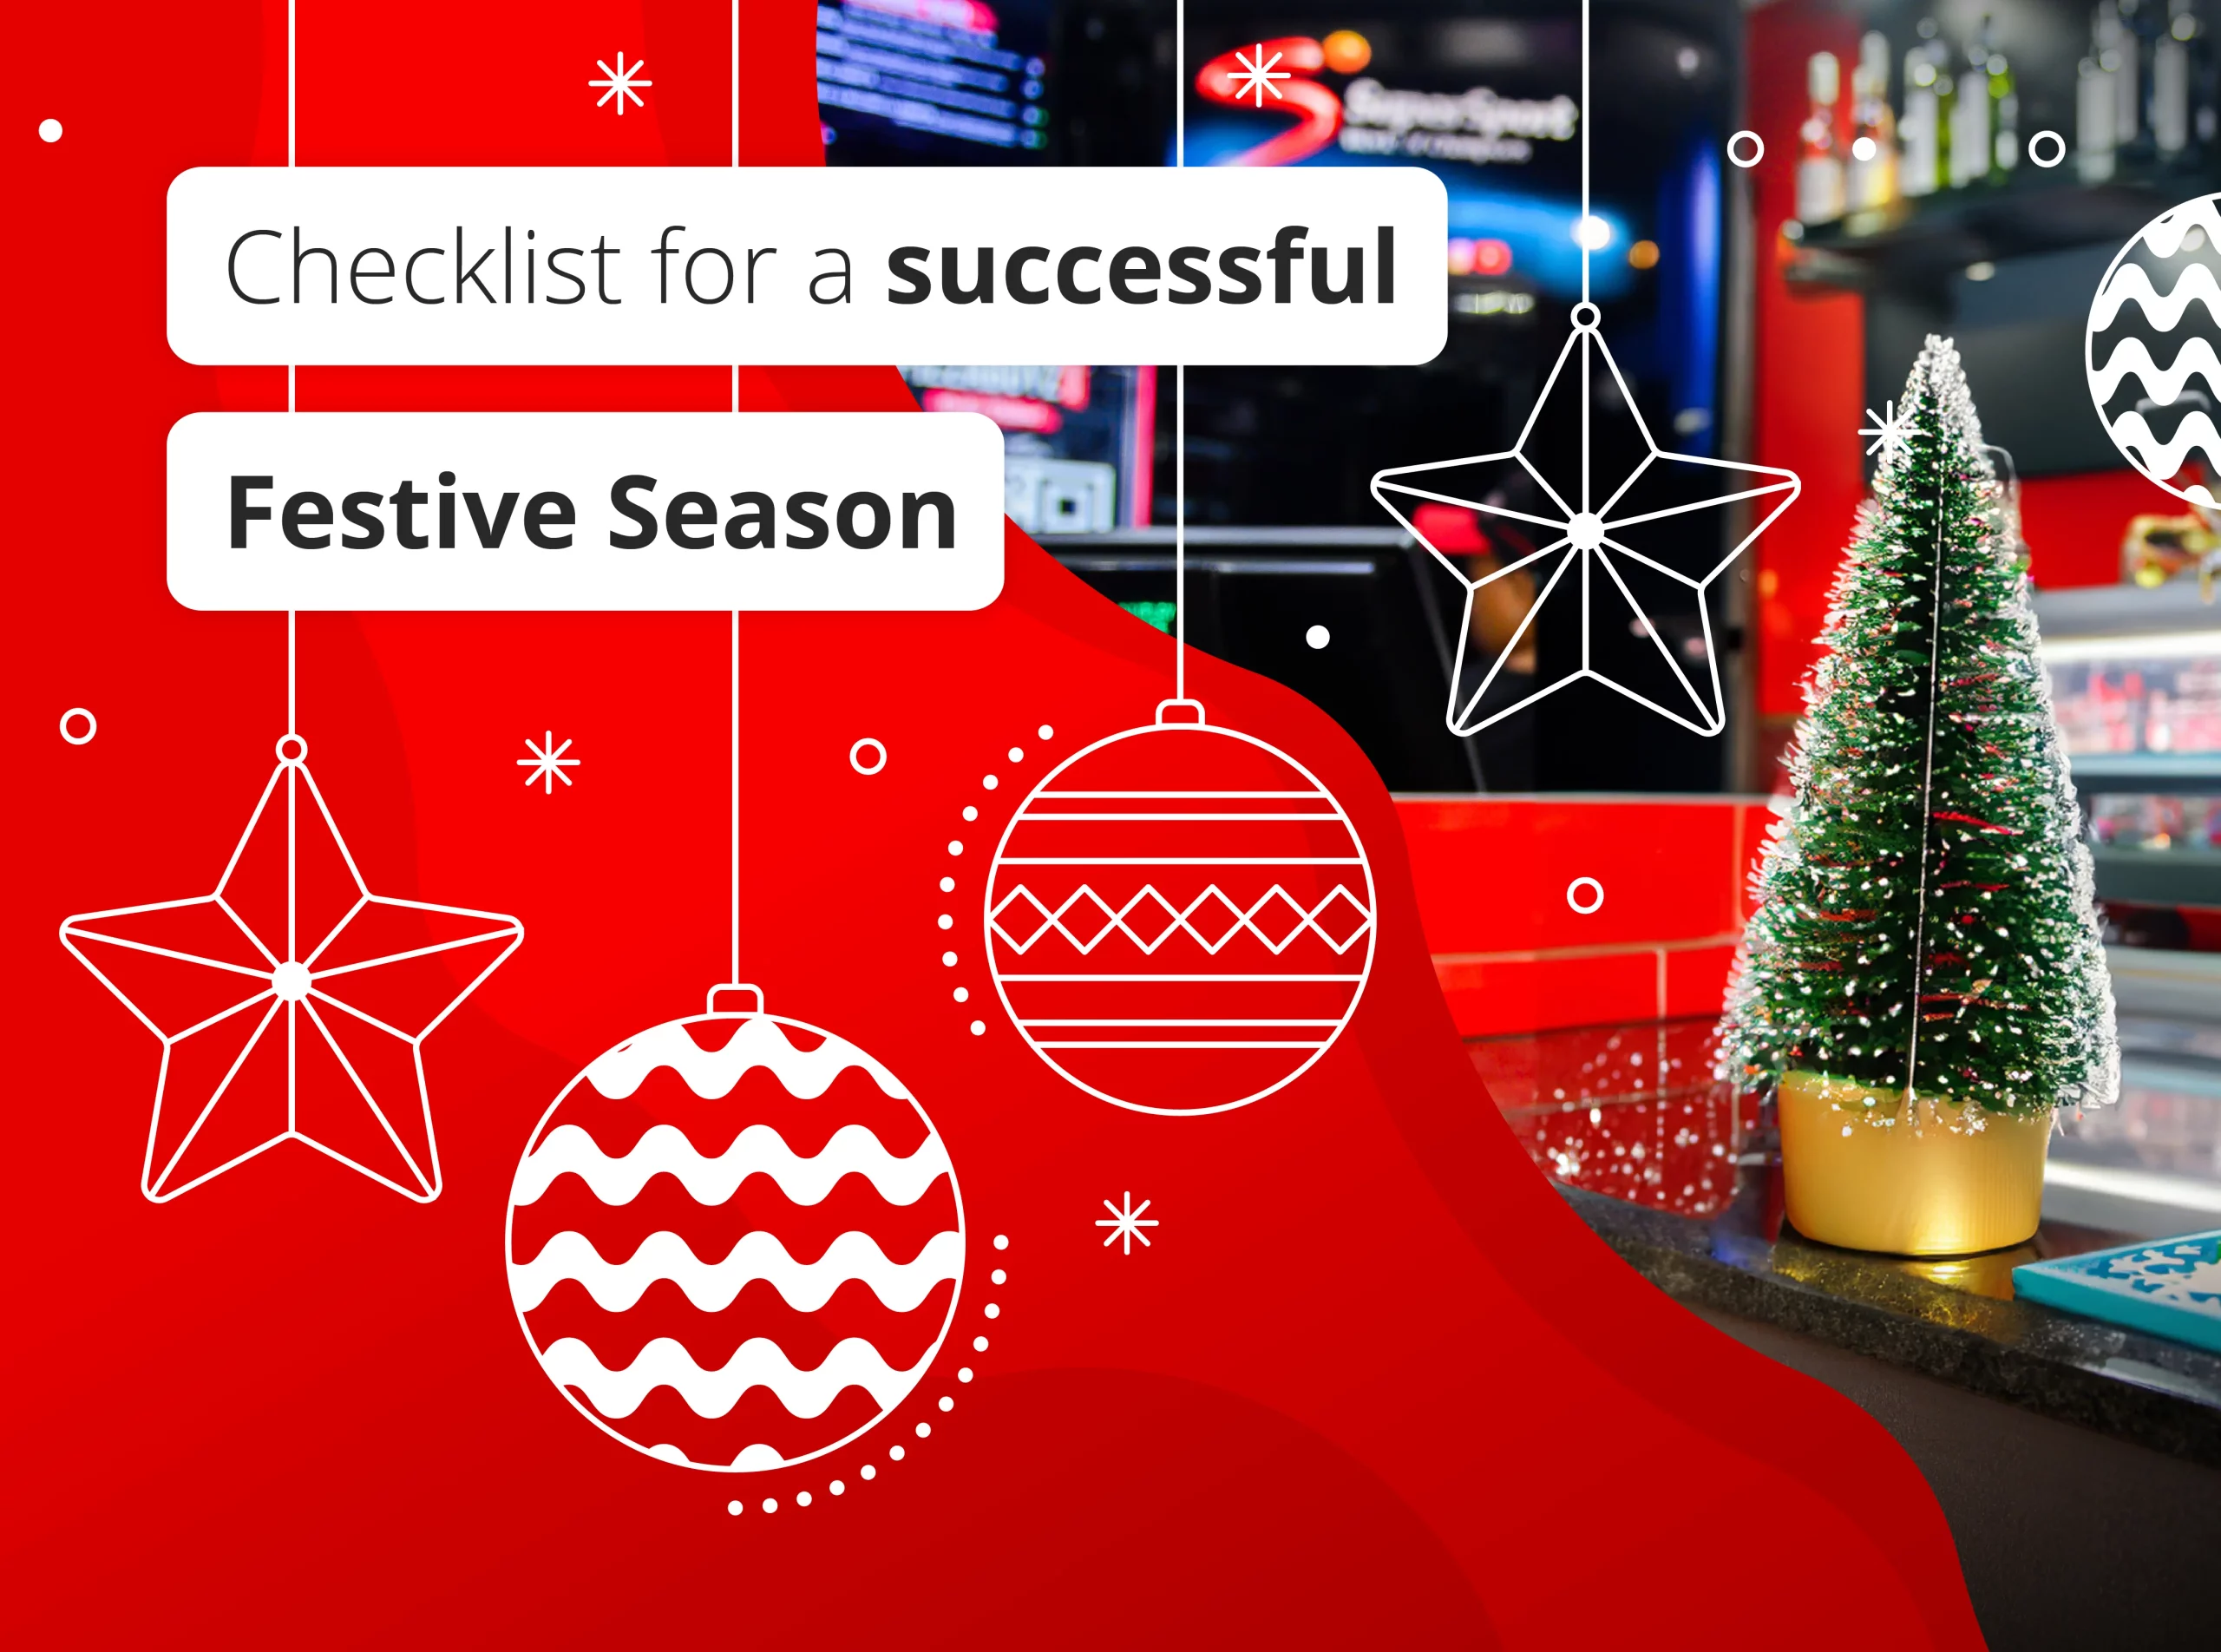 Checklist for a successful festive season